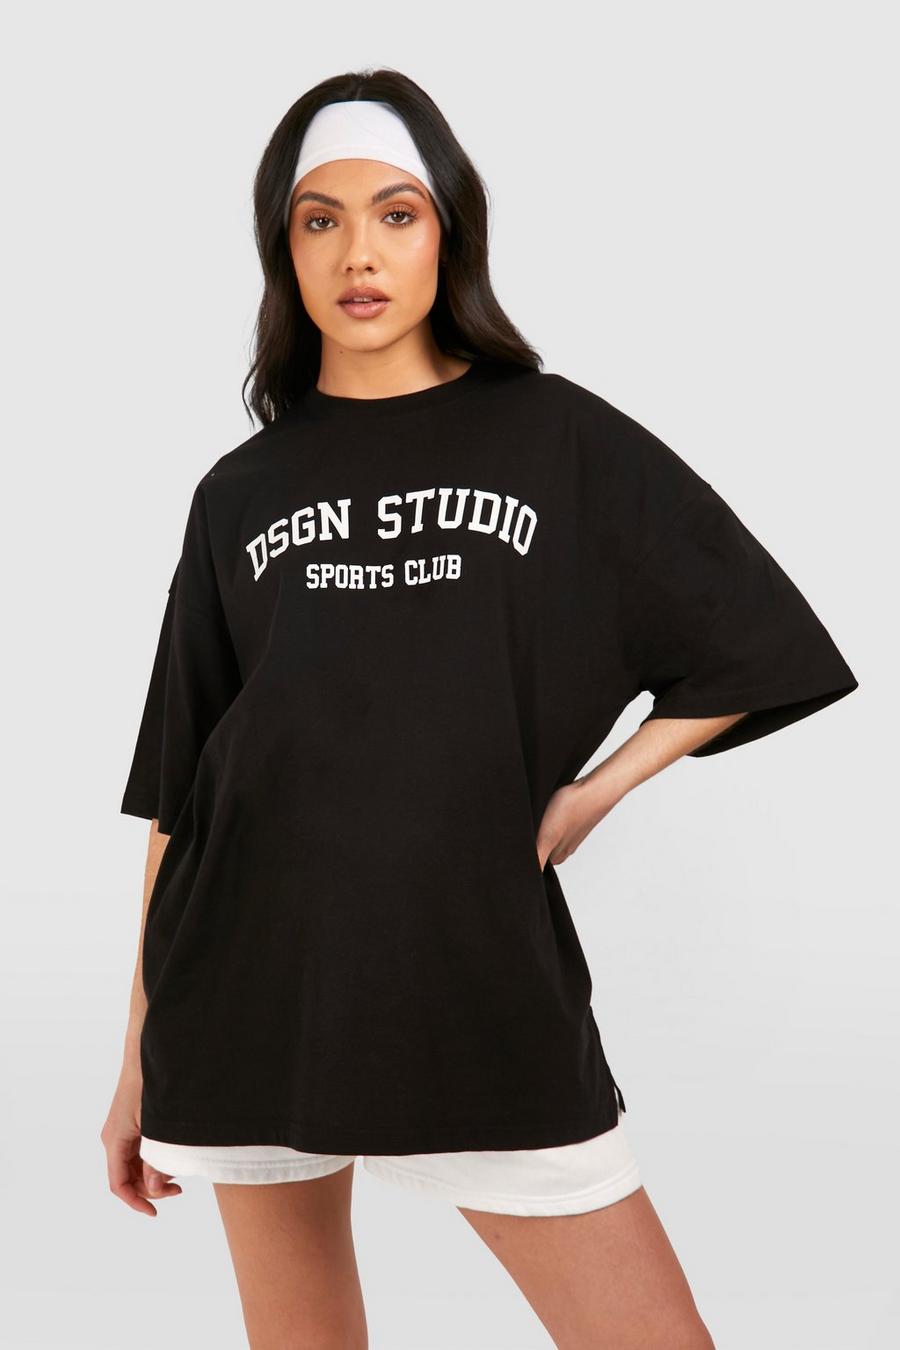 T-shirt Premaman oversize con stampa Dsgn Studio, Black